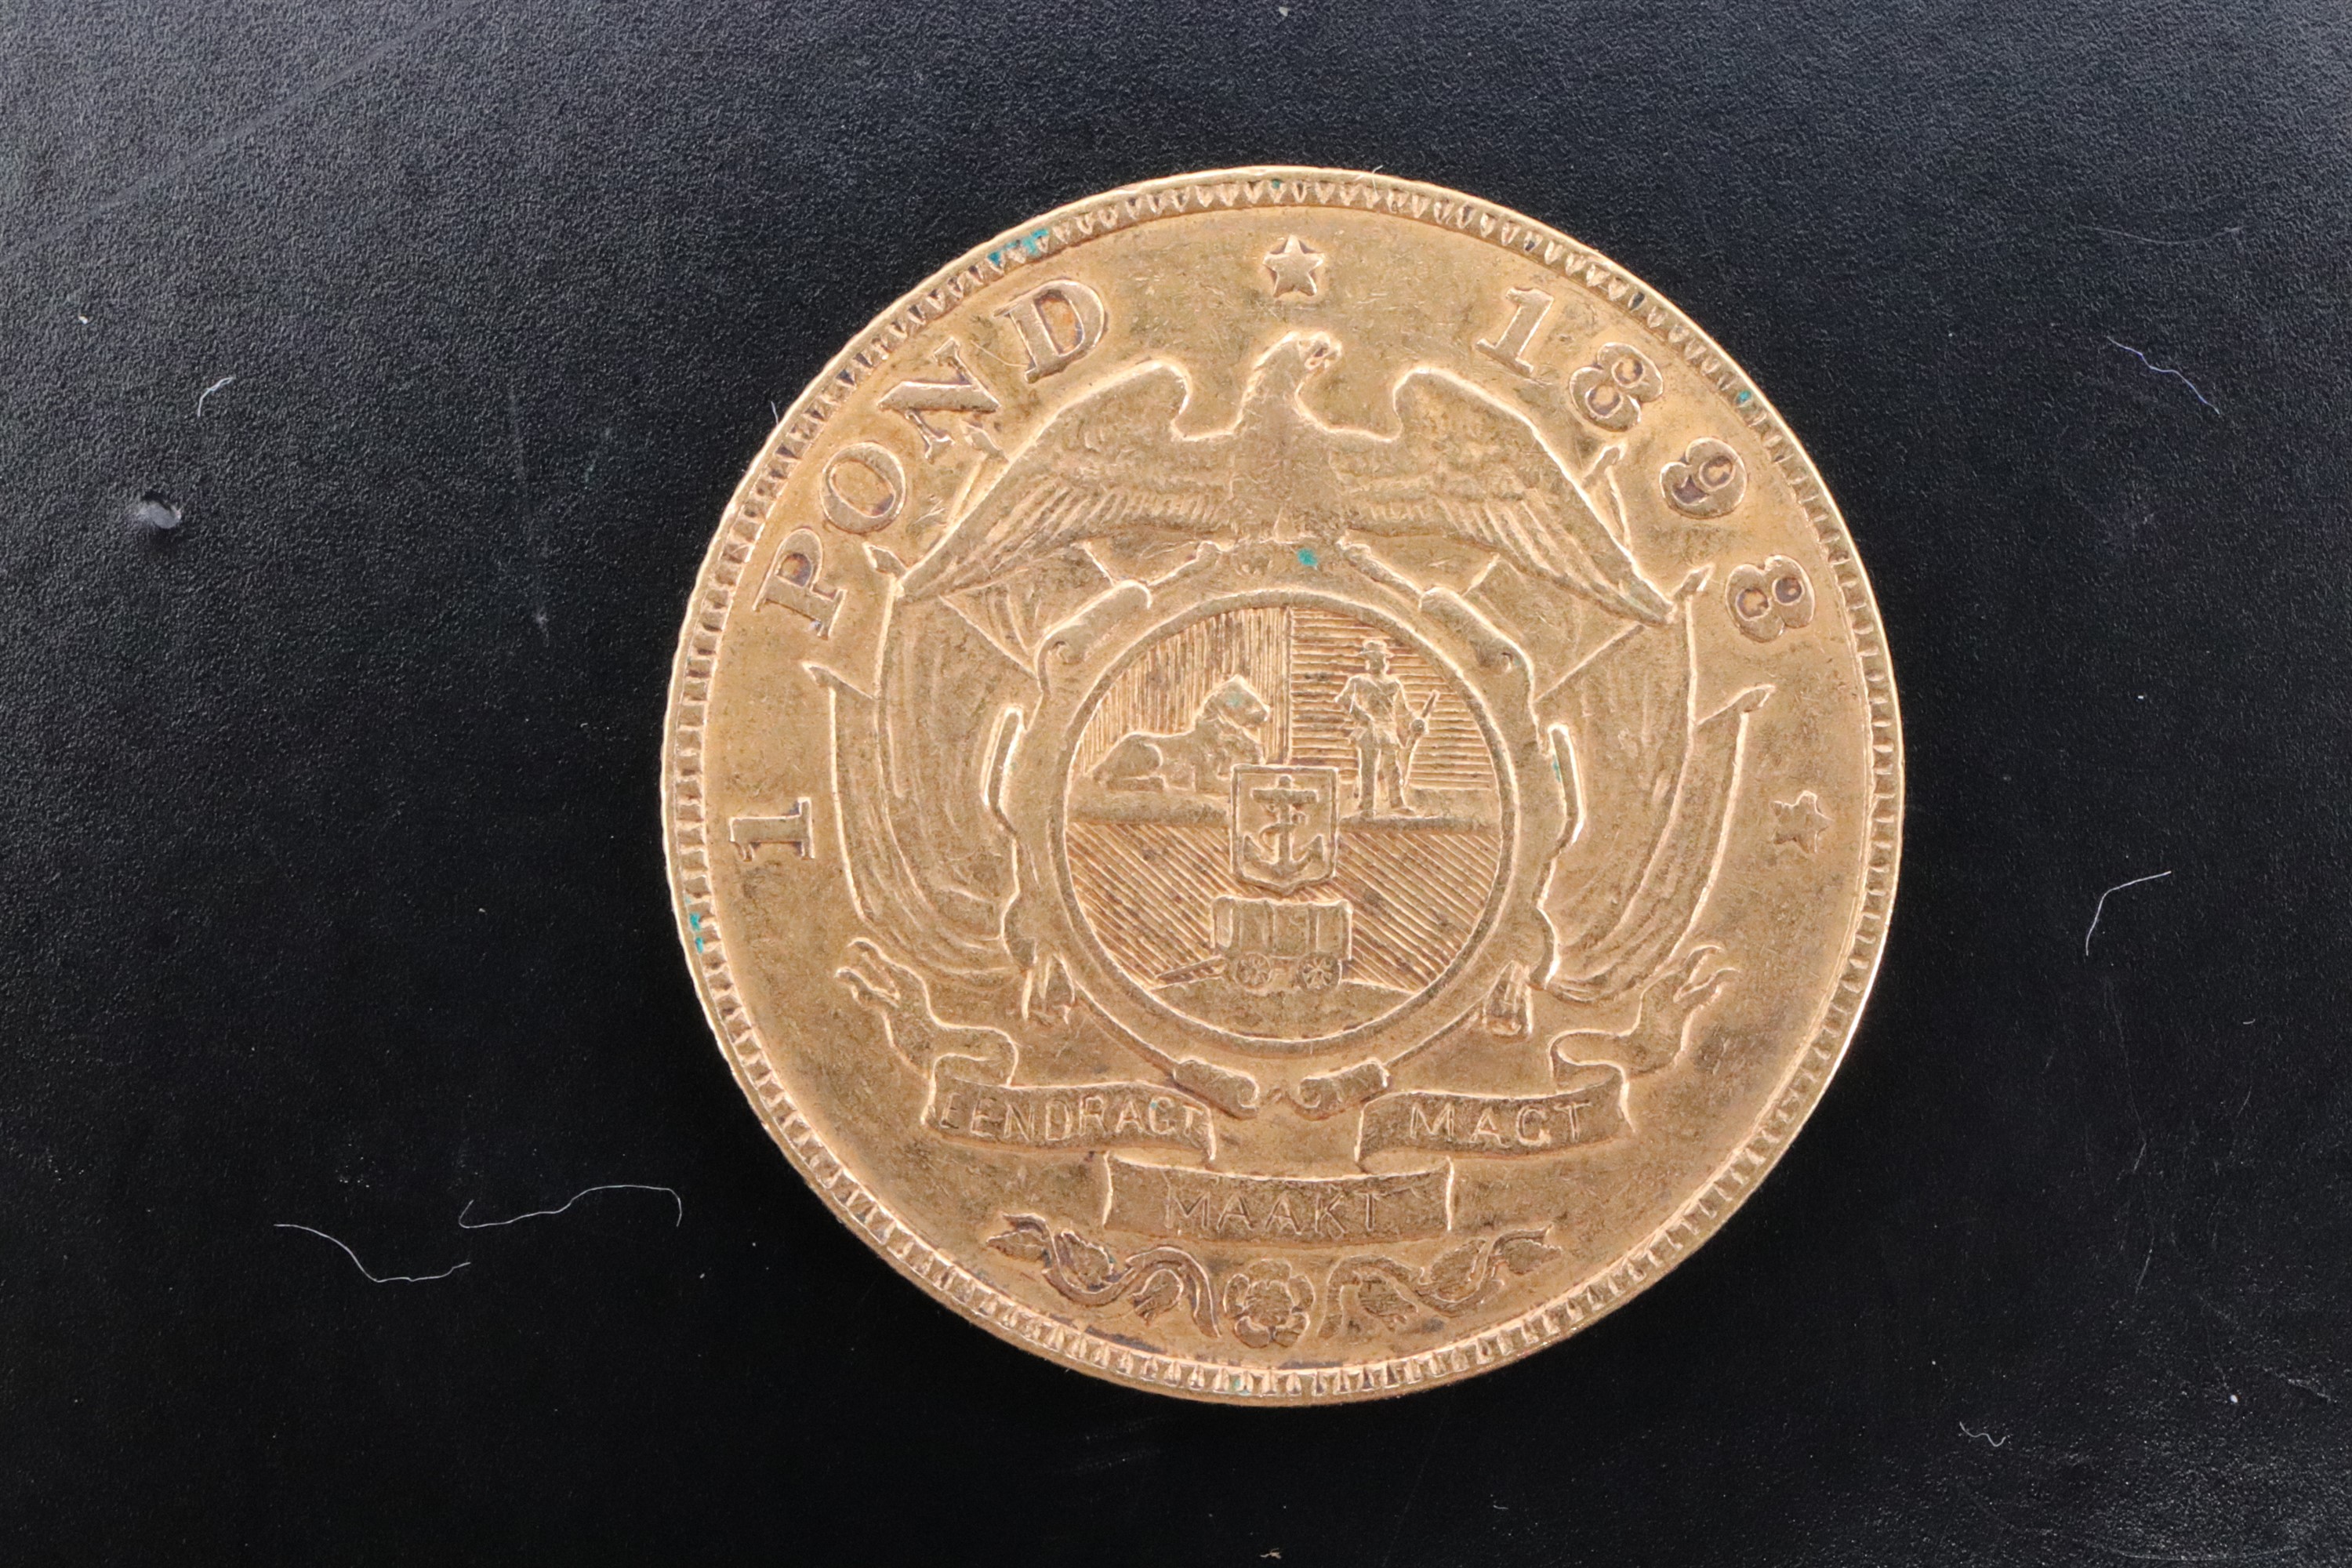 An 1898 Boer South African Republic / Zuid-Afrikaansche Republiek 1 pond gold coin - Image 3 of 4